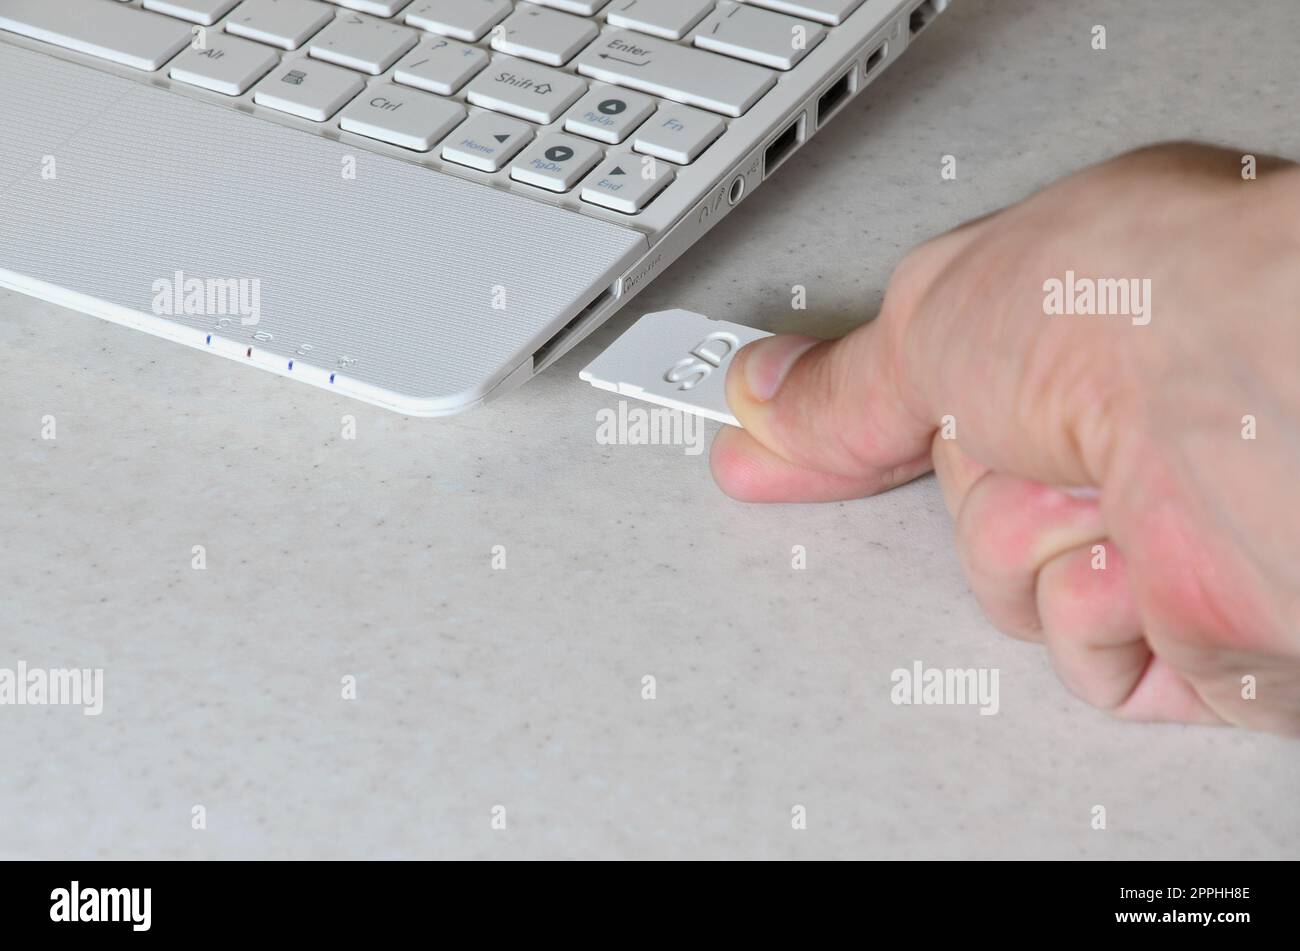 Eine männliche Hand steckt eine weiße kompakte SD-Karte in den entsprechenden Eingang an der Seite des weißen Netbooks. Der Mensch nutzt moderne Technologien, um Speicher und digitale Daten zu speichern Stockfoto